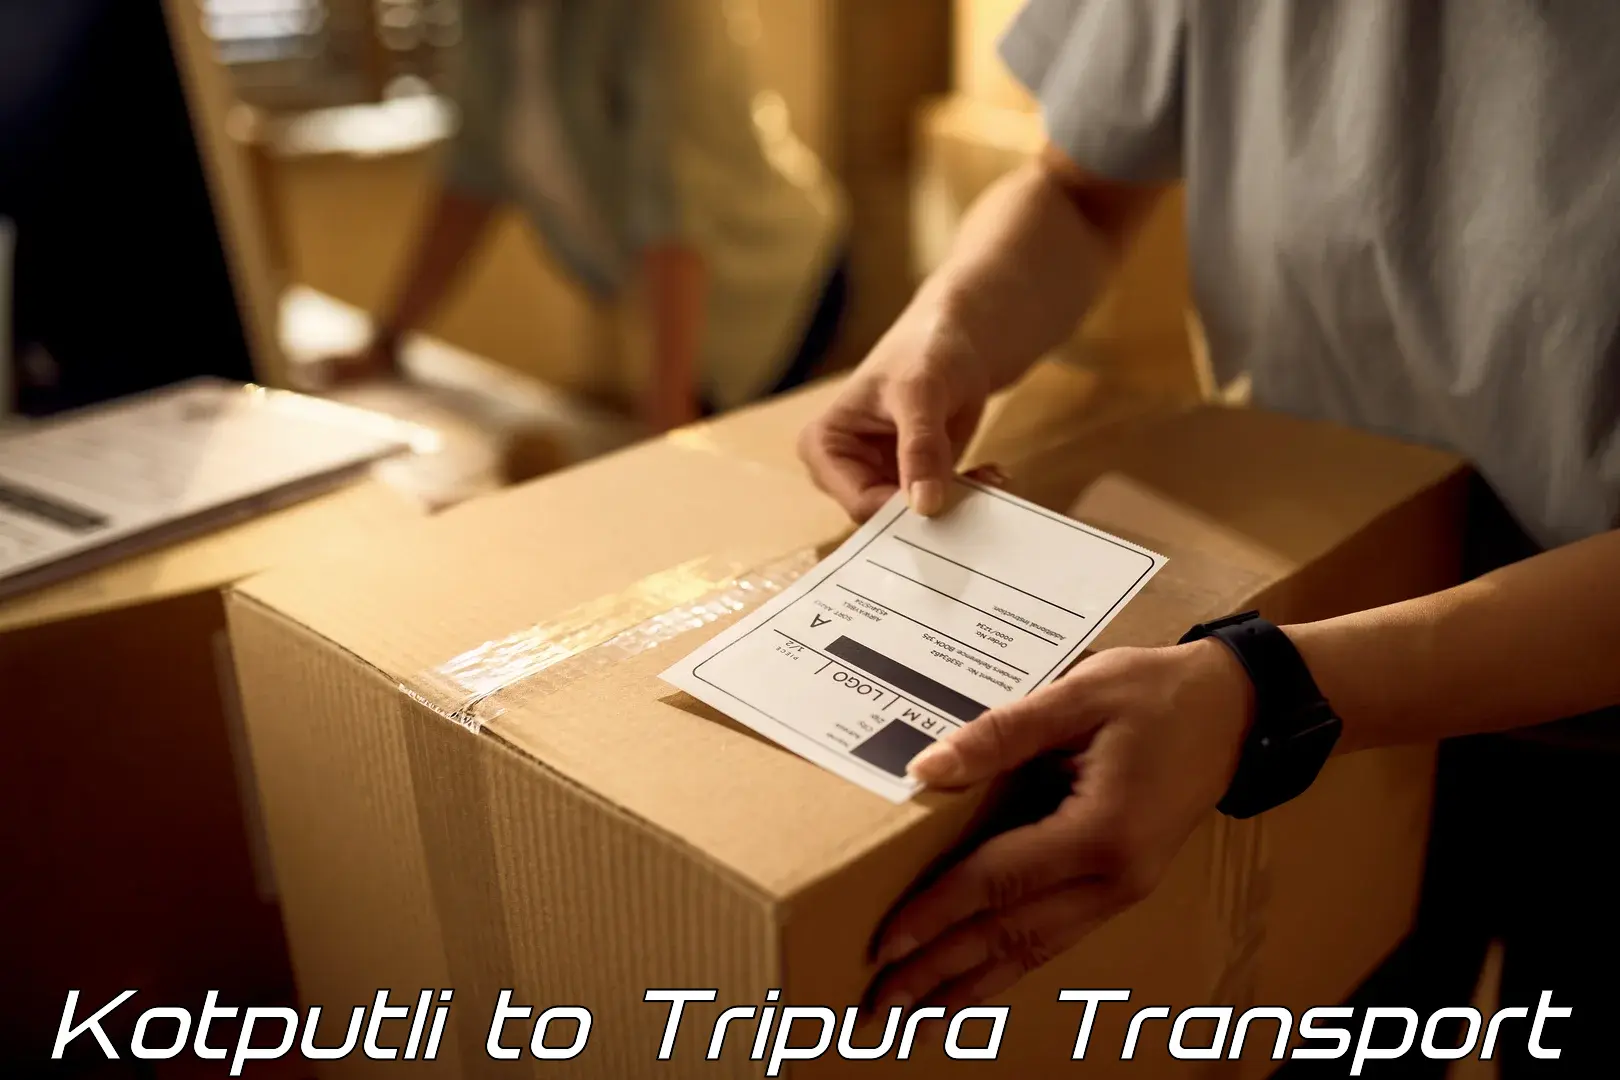 Transport in sharing Kotputli to South Tripura